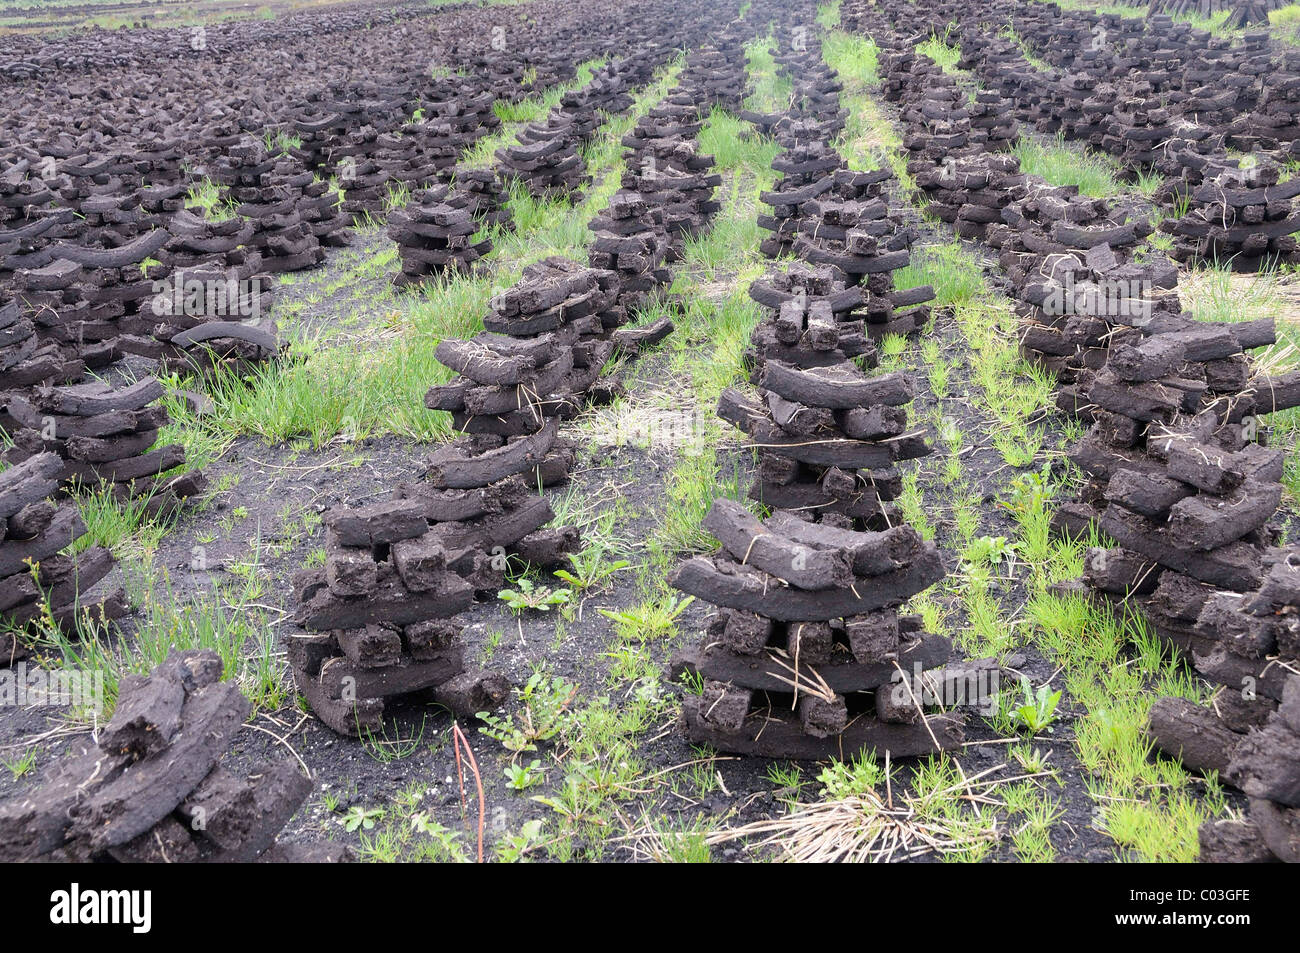 Briquettes de tourbe utilisée comme combustible dans des maisons privées sont séchées par les citoyens eux-mêmes, à Birr, Leinster, République d'Irlande, Europe Banque D'Images